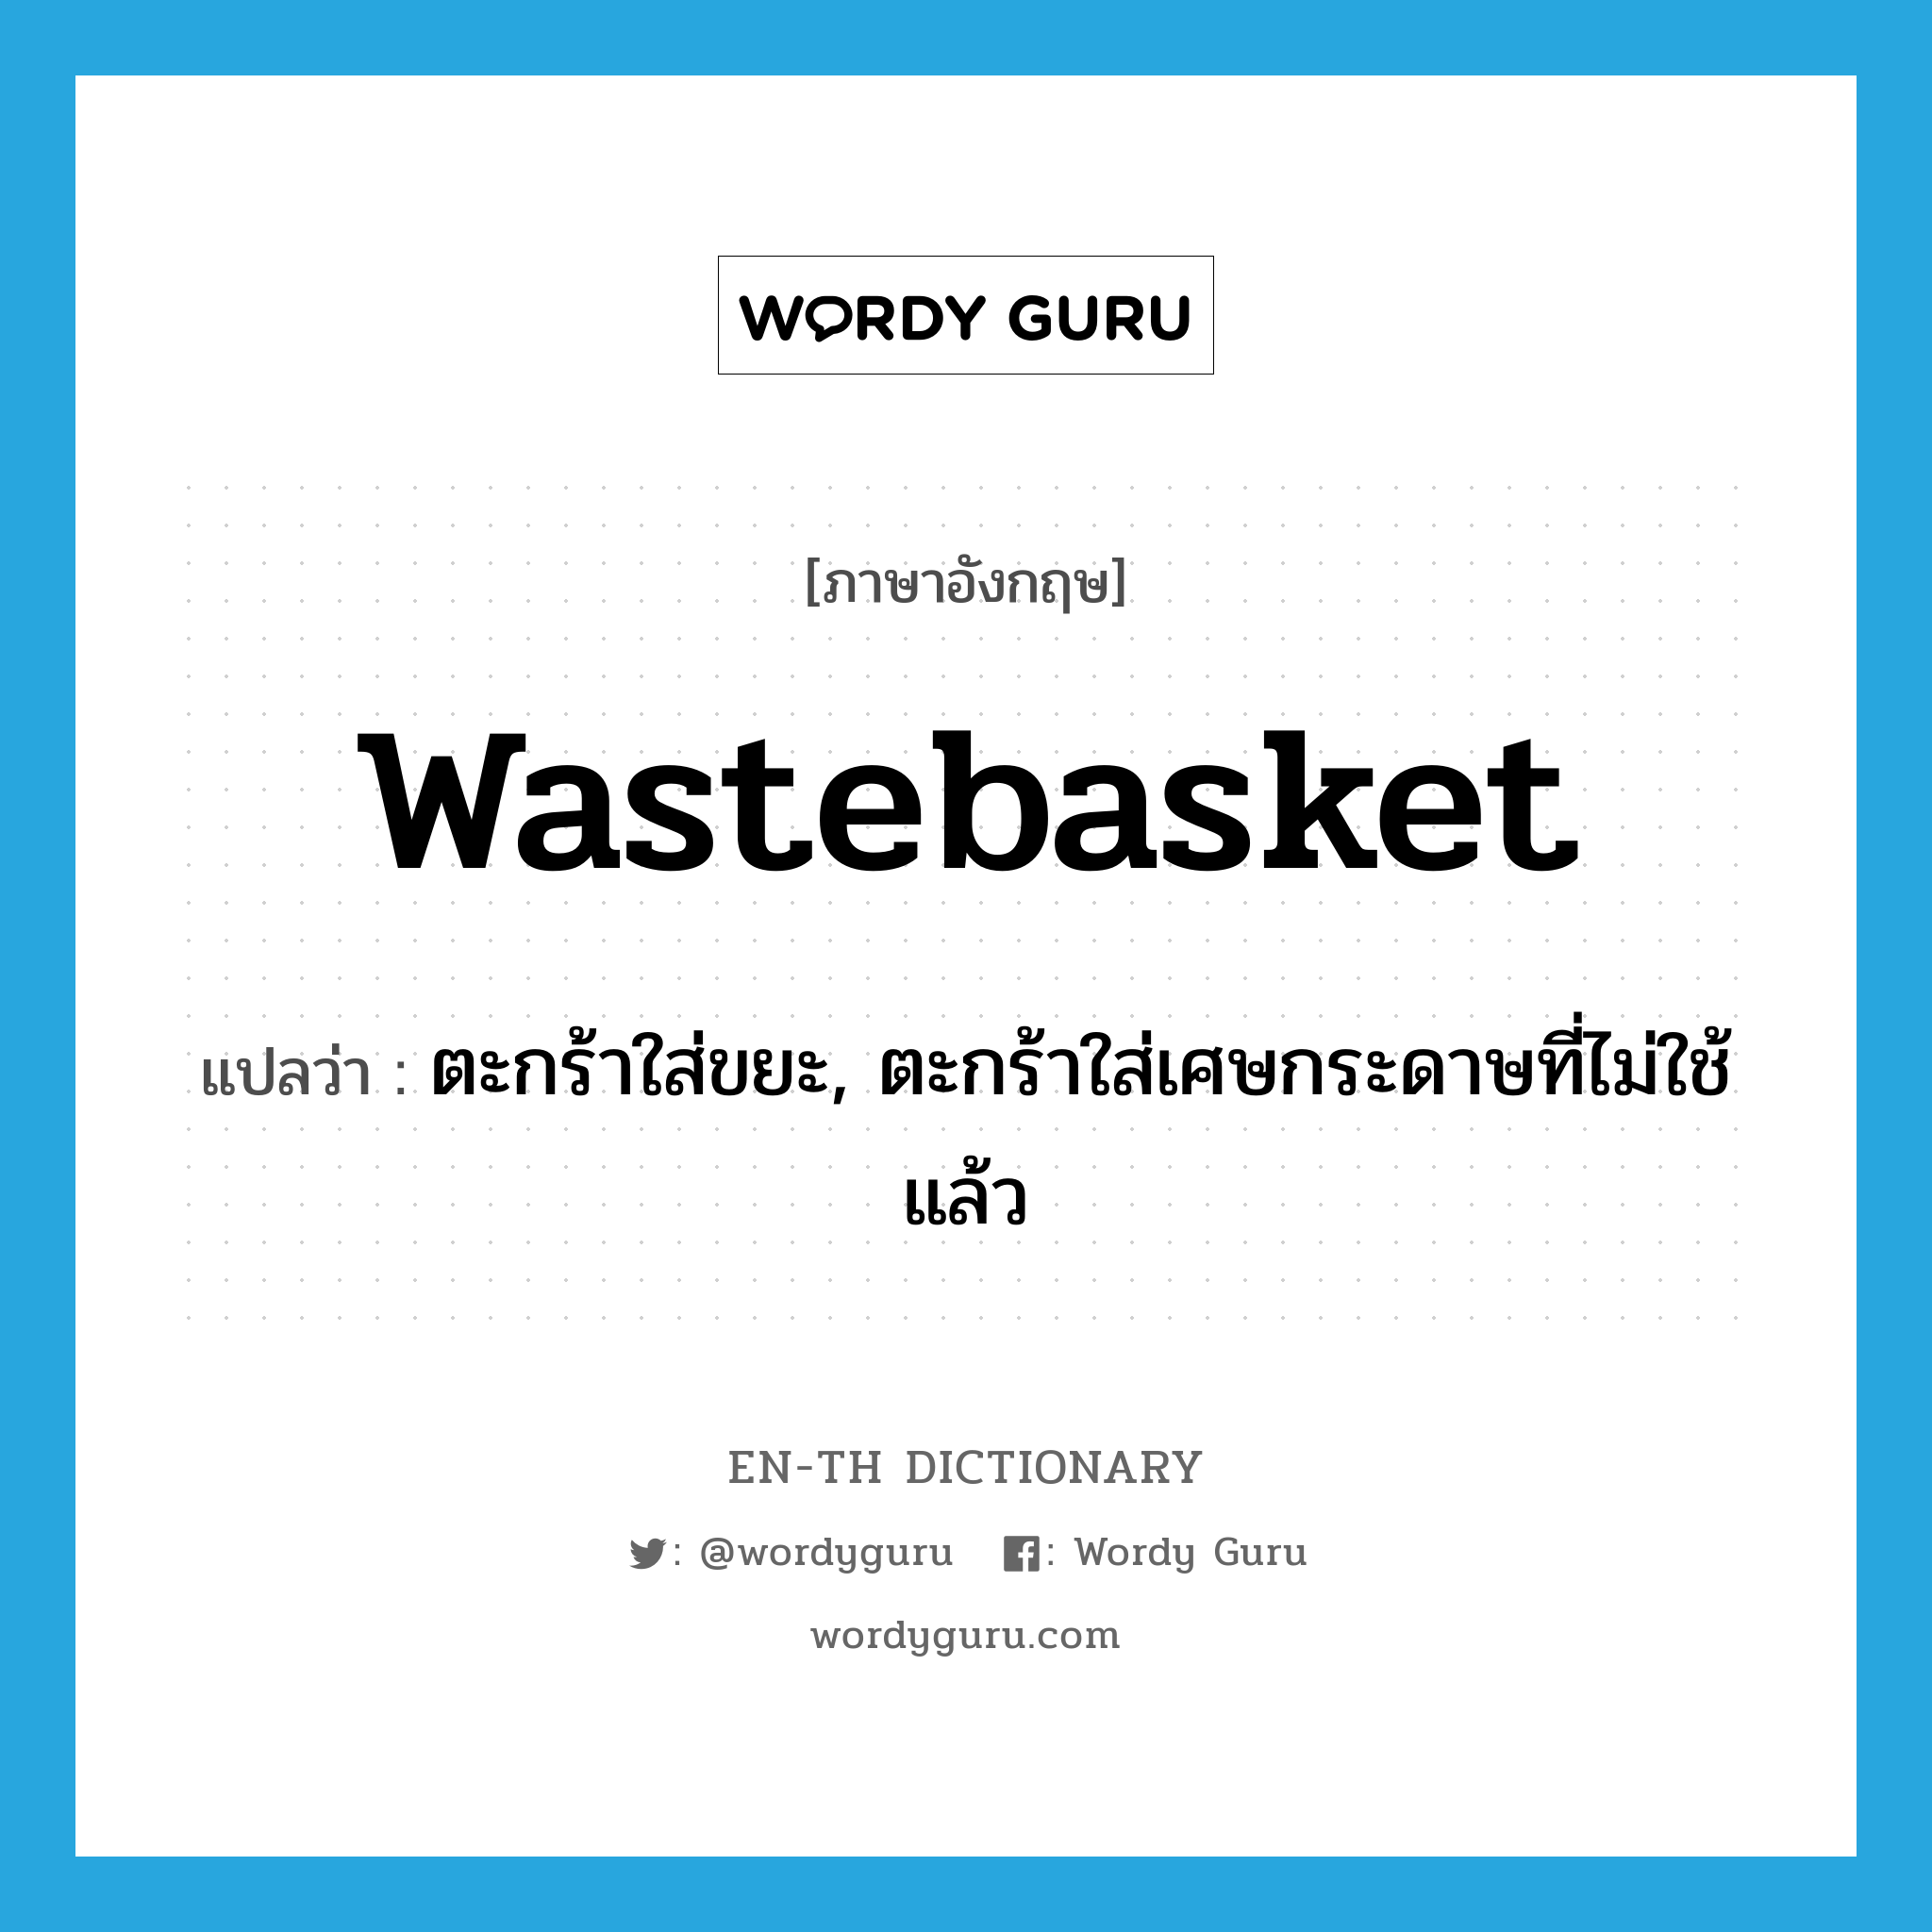 wastebasket แปลว่า?, คำศัพท์ภาษาอังกฤษ wastebasket แปลว่า ตะกร้าใส่ขยะ, ตะกร้าใส่เศษกระดาษที่ไม่ใช้แล้ว ประเภท N หมวด N